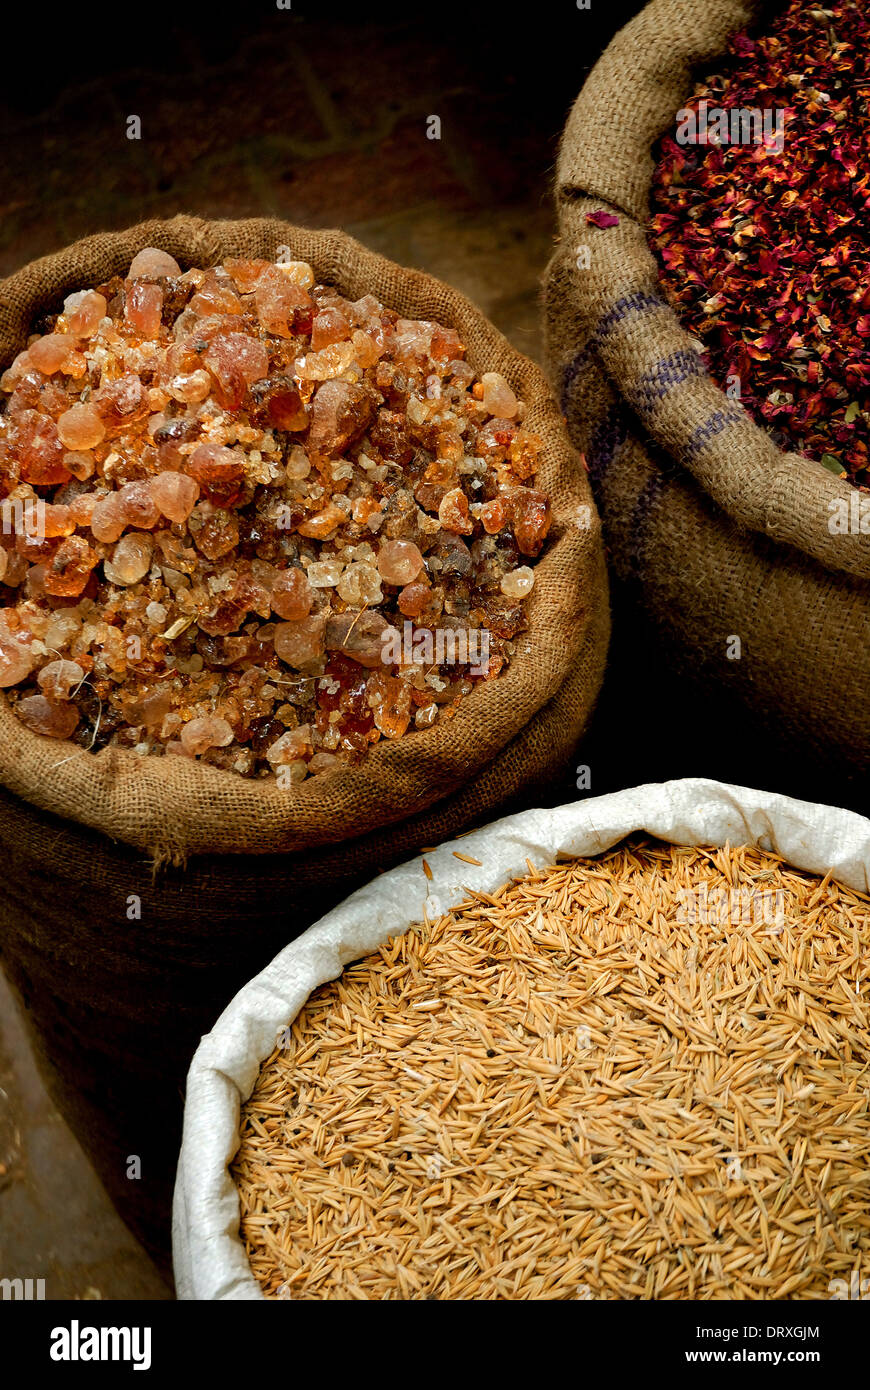 Spice market / Khan El Khalili Bazaar, Cairo Stock Photo